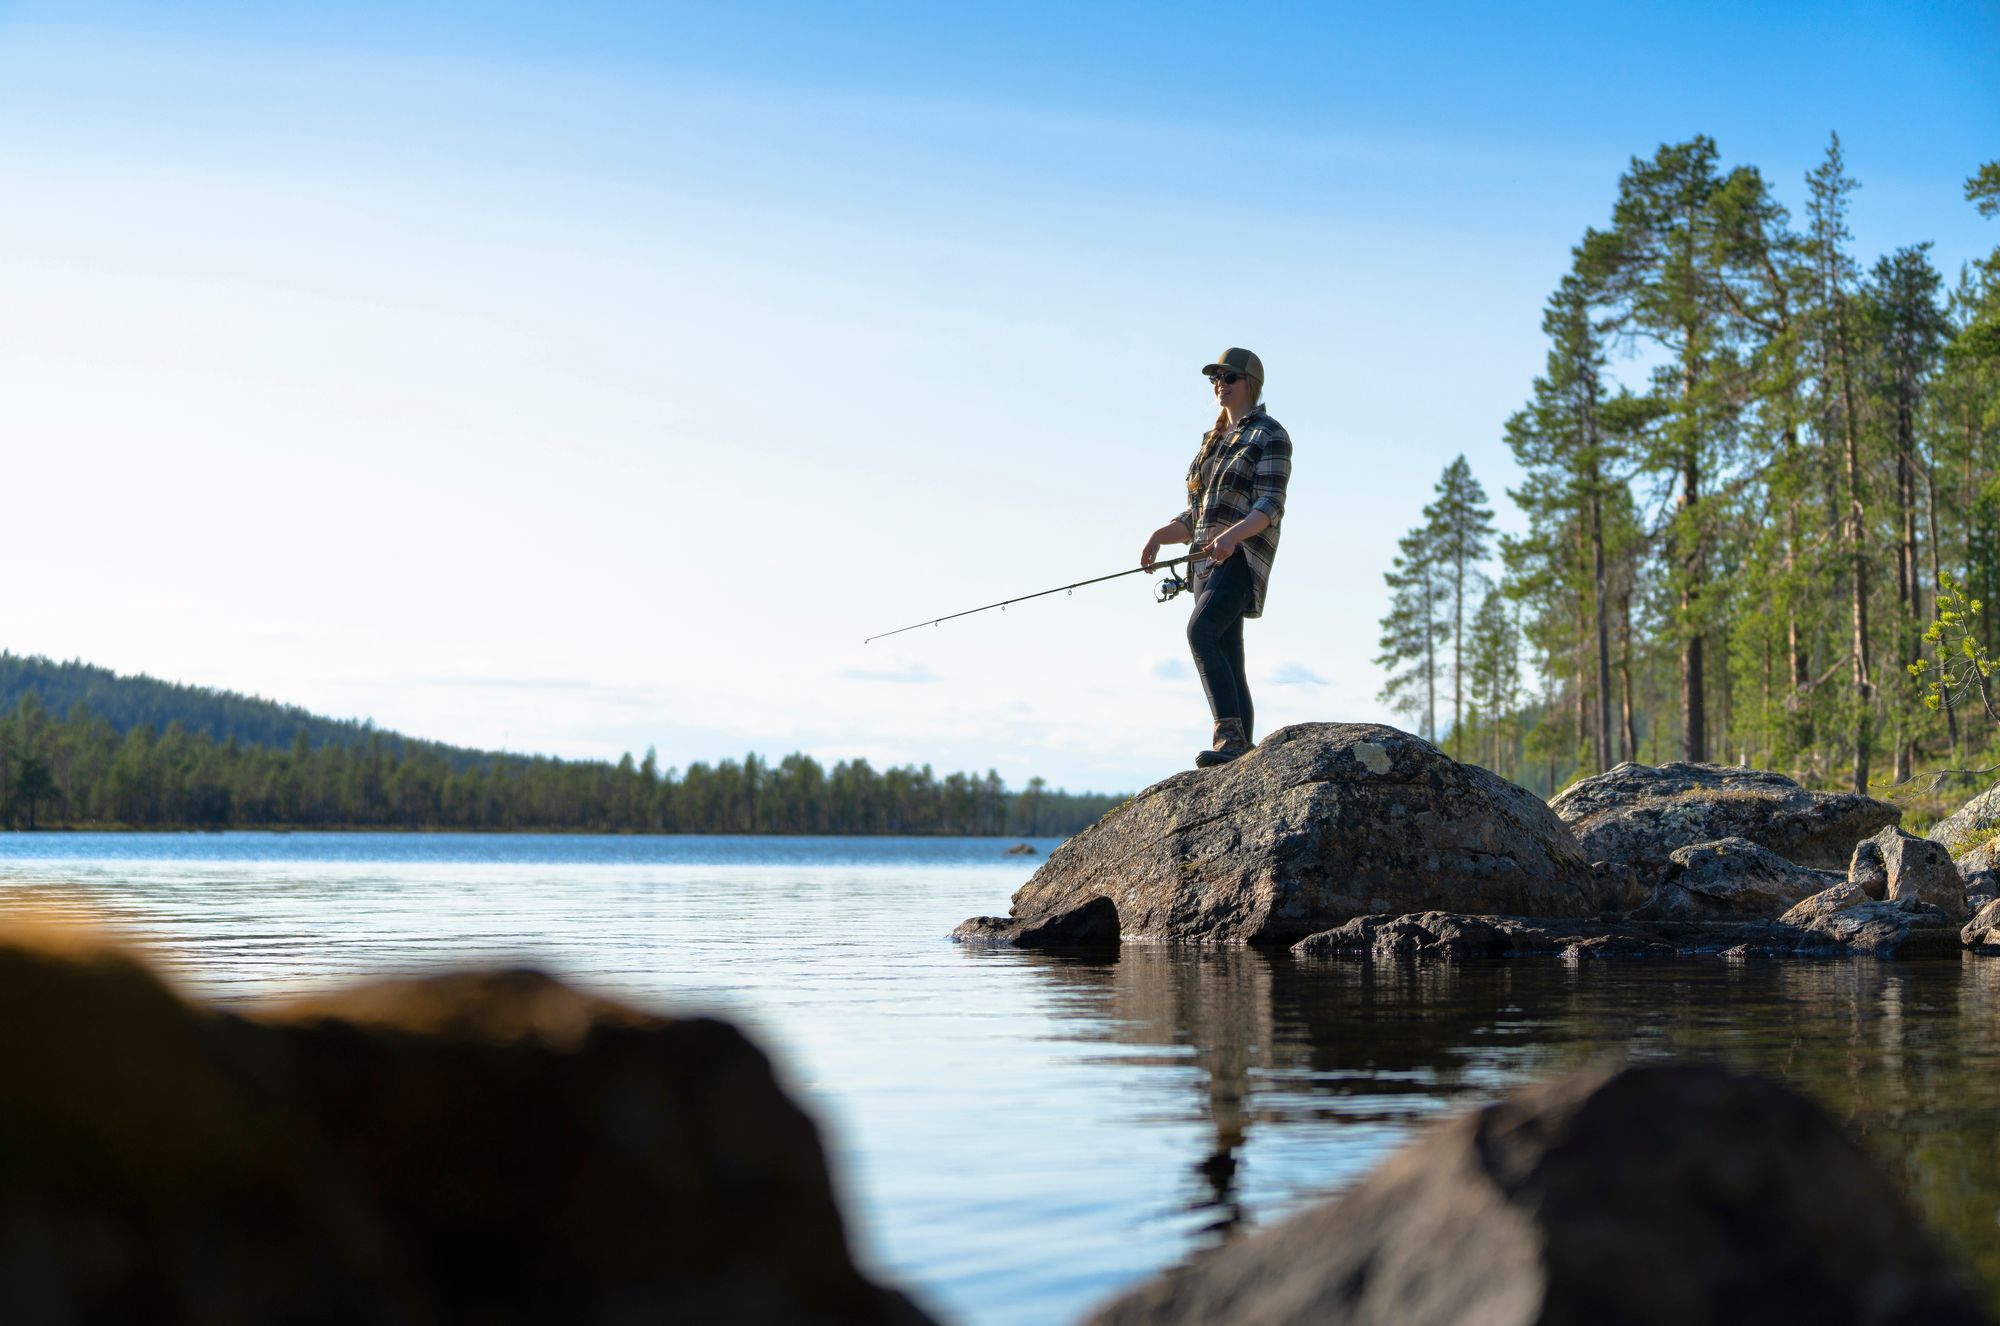 Eräoppaana Sonja Lassila vie turisteja metsään ja kertoo Suomen luonnon ihmeistä. Burn out ei ole uudessa työssä uhannut. © Juha Kauppinen